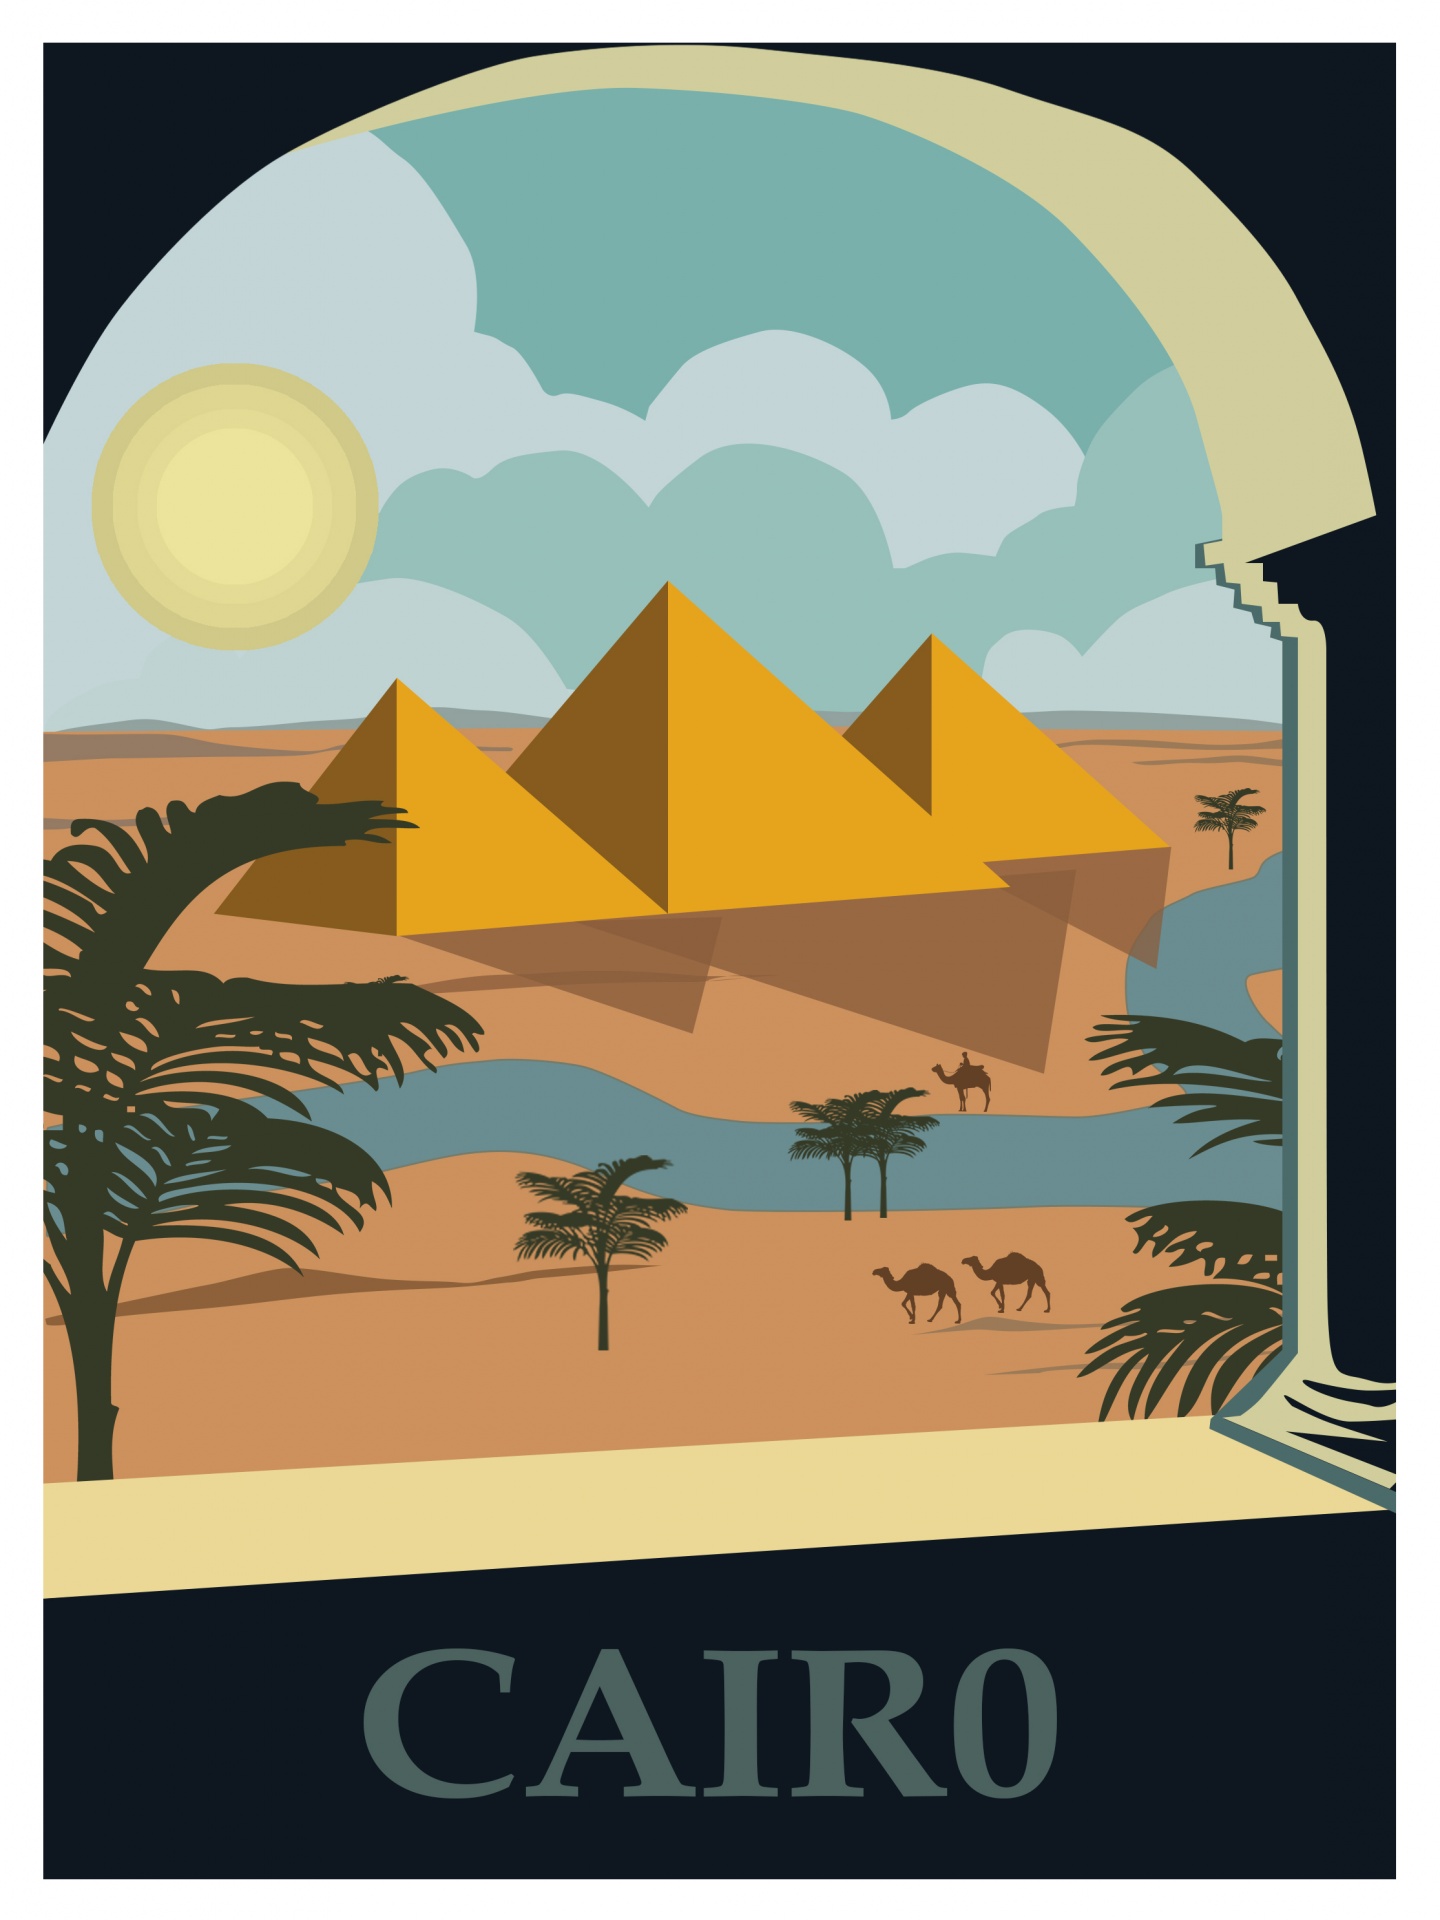 Egypt, Cairo Travel Poster